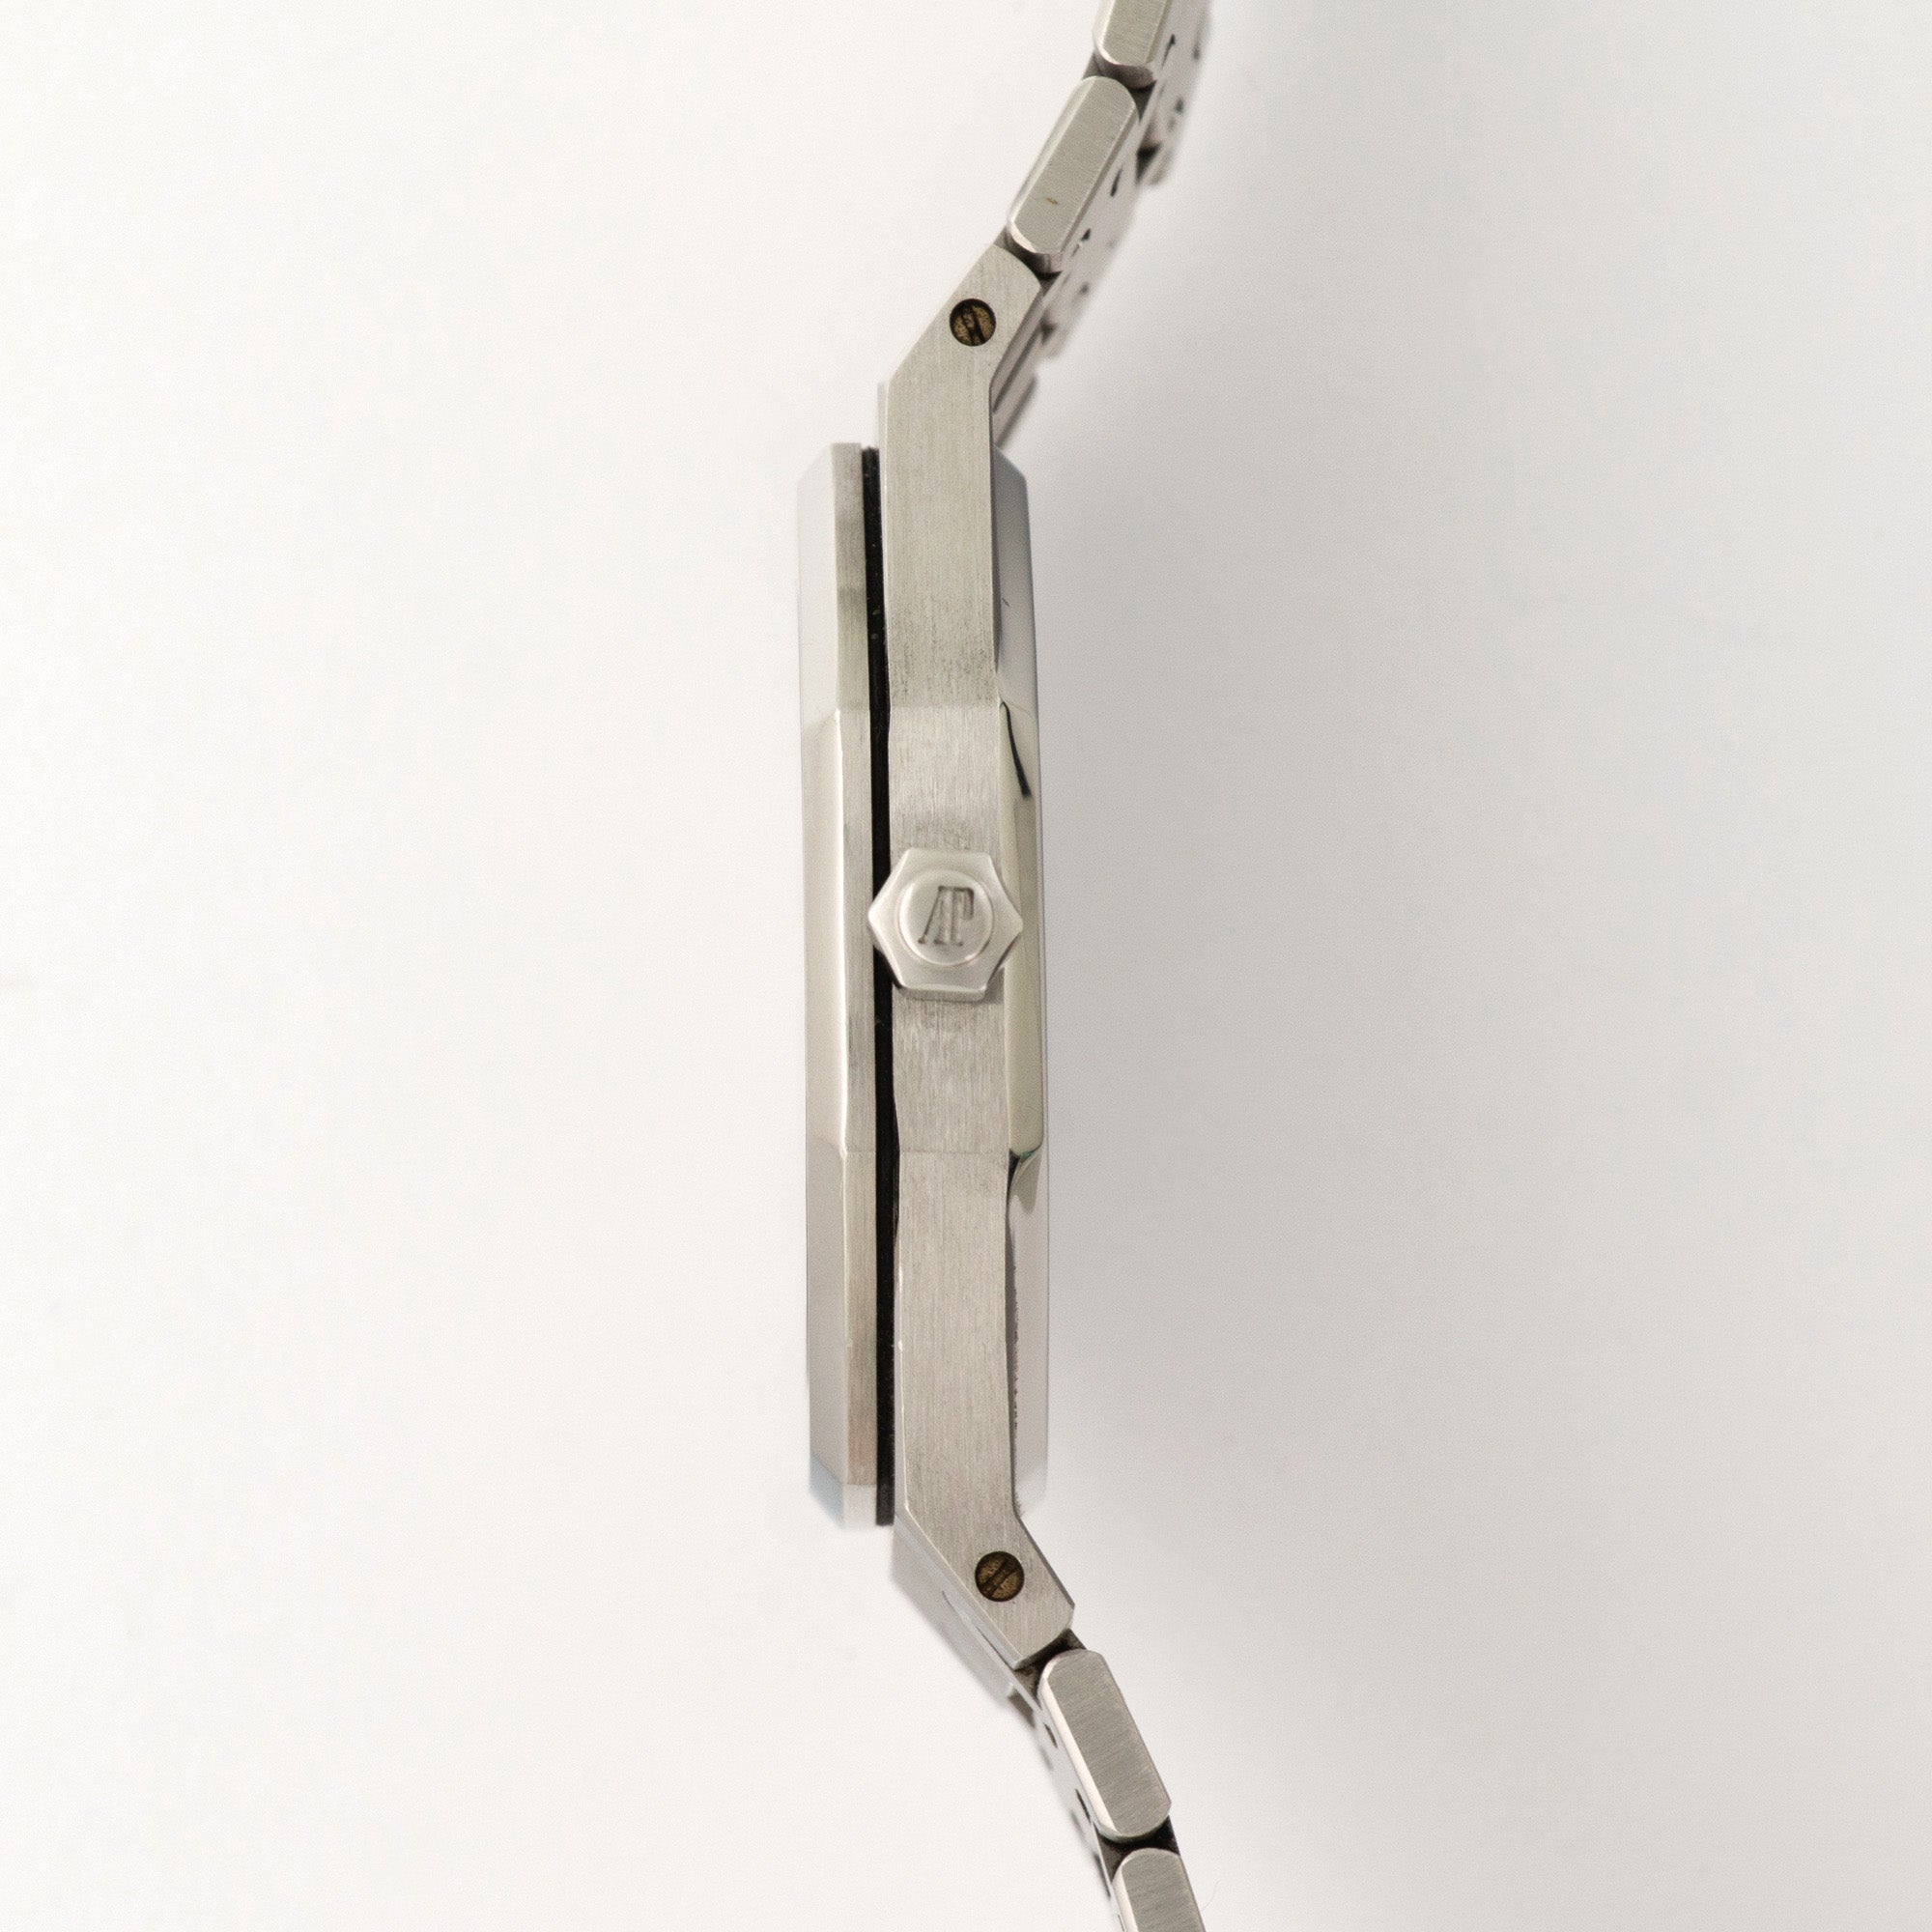 Audemars Piguet - Audemars Piguet Steel Royal Oak Watch Ref. 14790 - The Keystone Watches